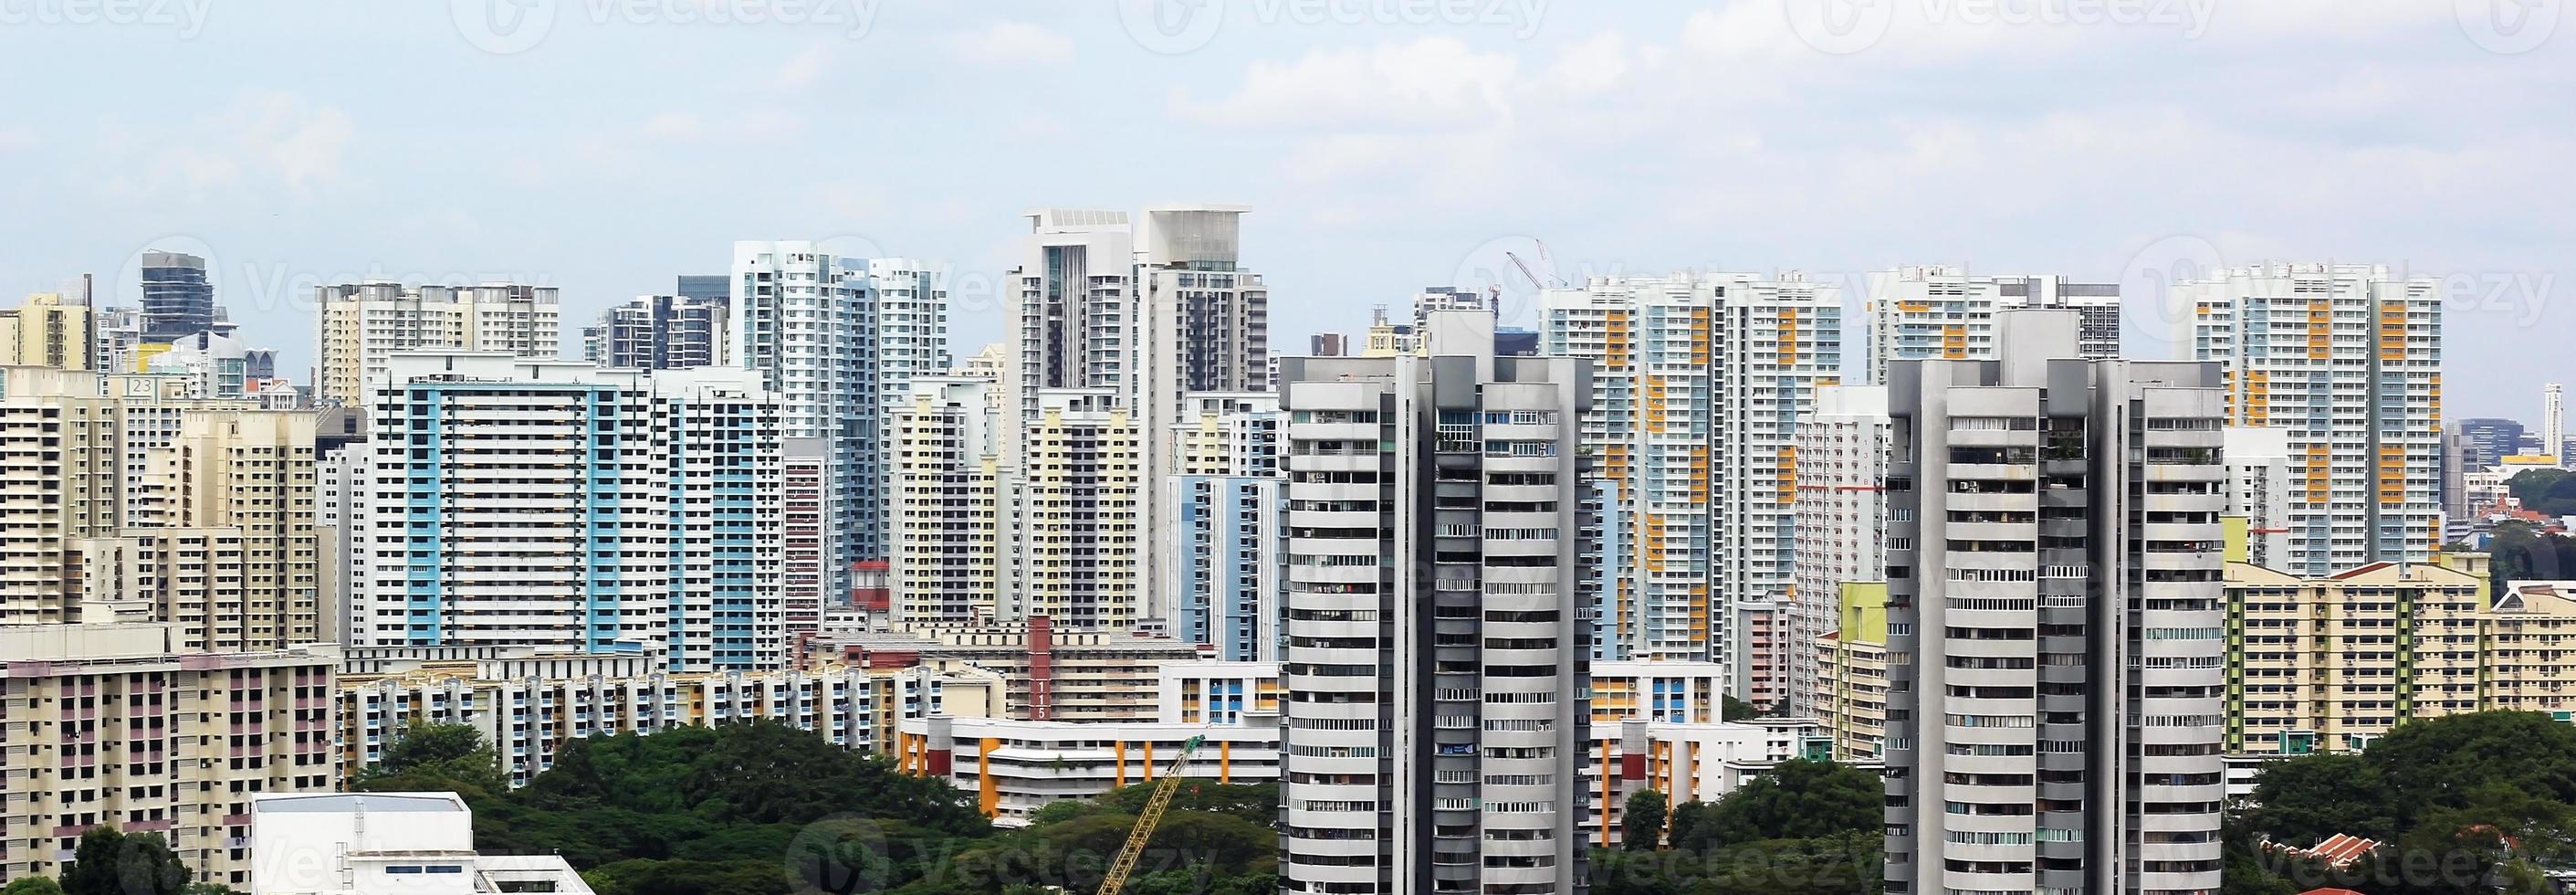 stadsgezicht van veel moderne hoge wolkenkrabber condominiums, appartementen, met huizen op de voorgrond. gebouwen, singapore, stadsgebied. foto